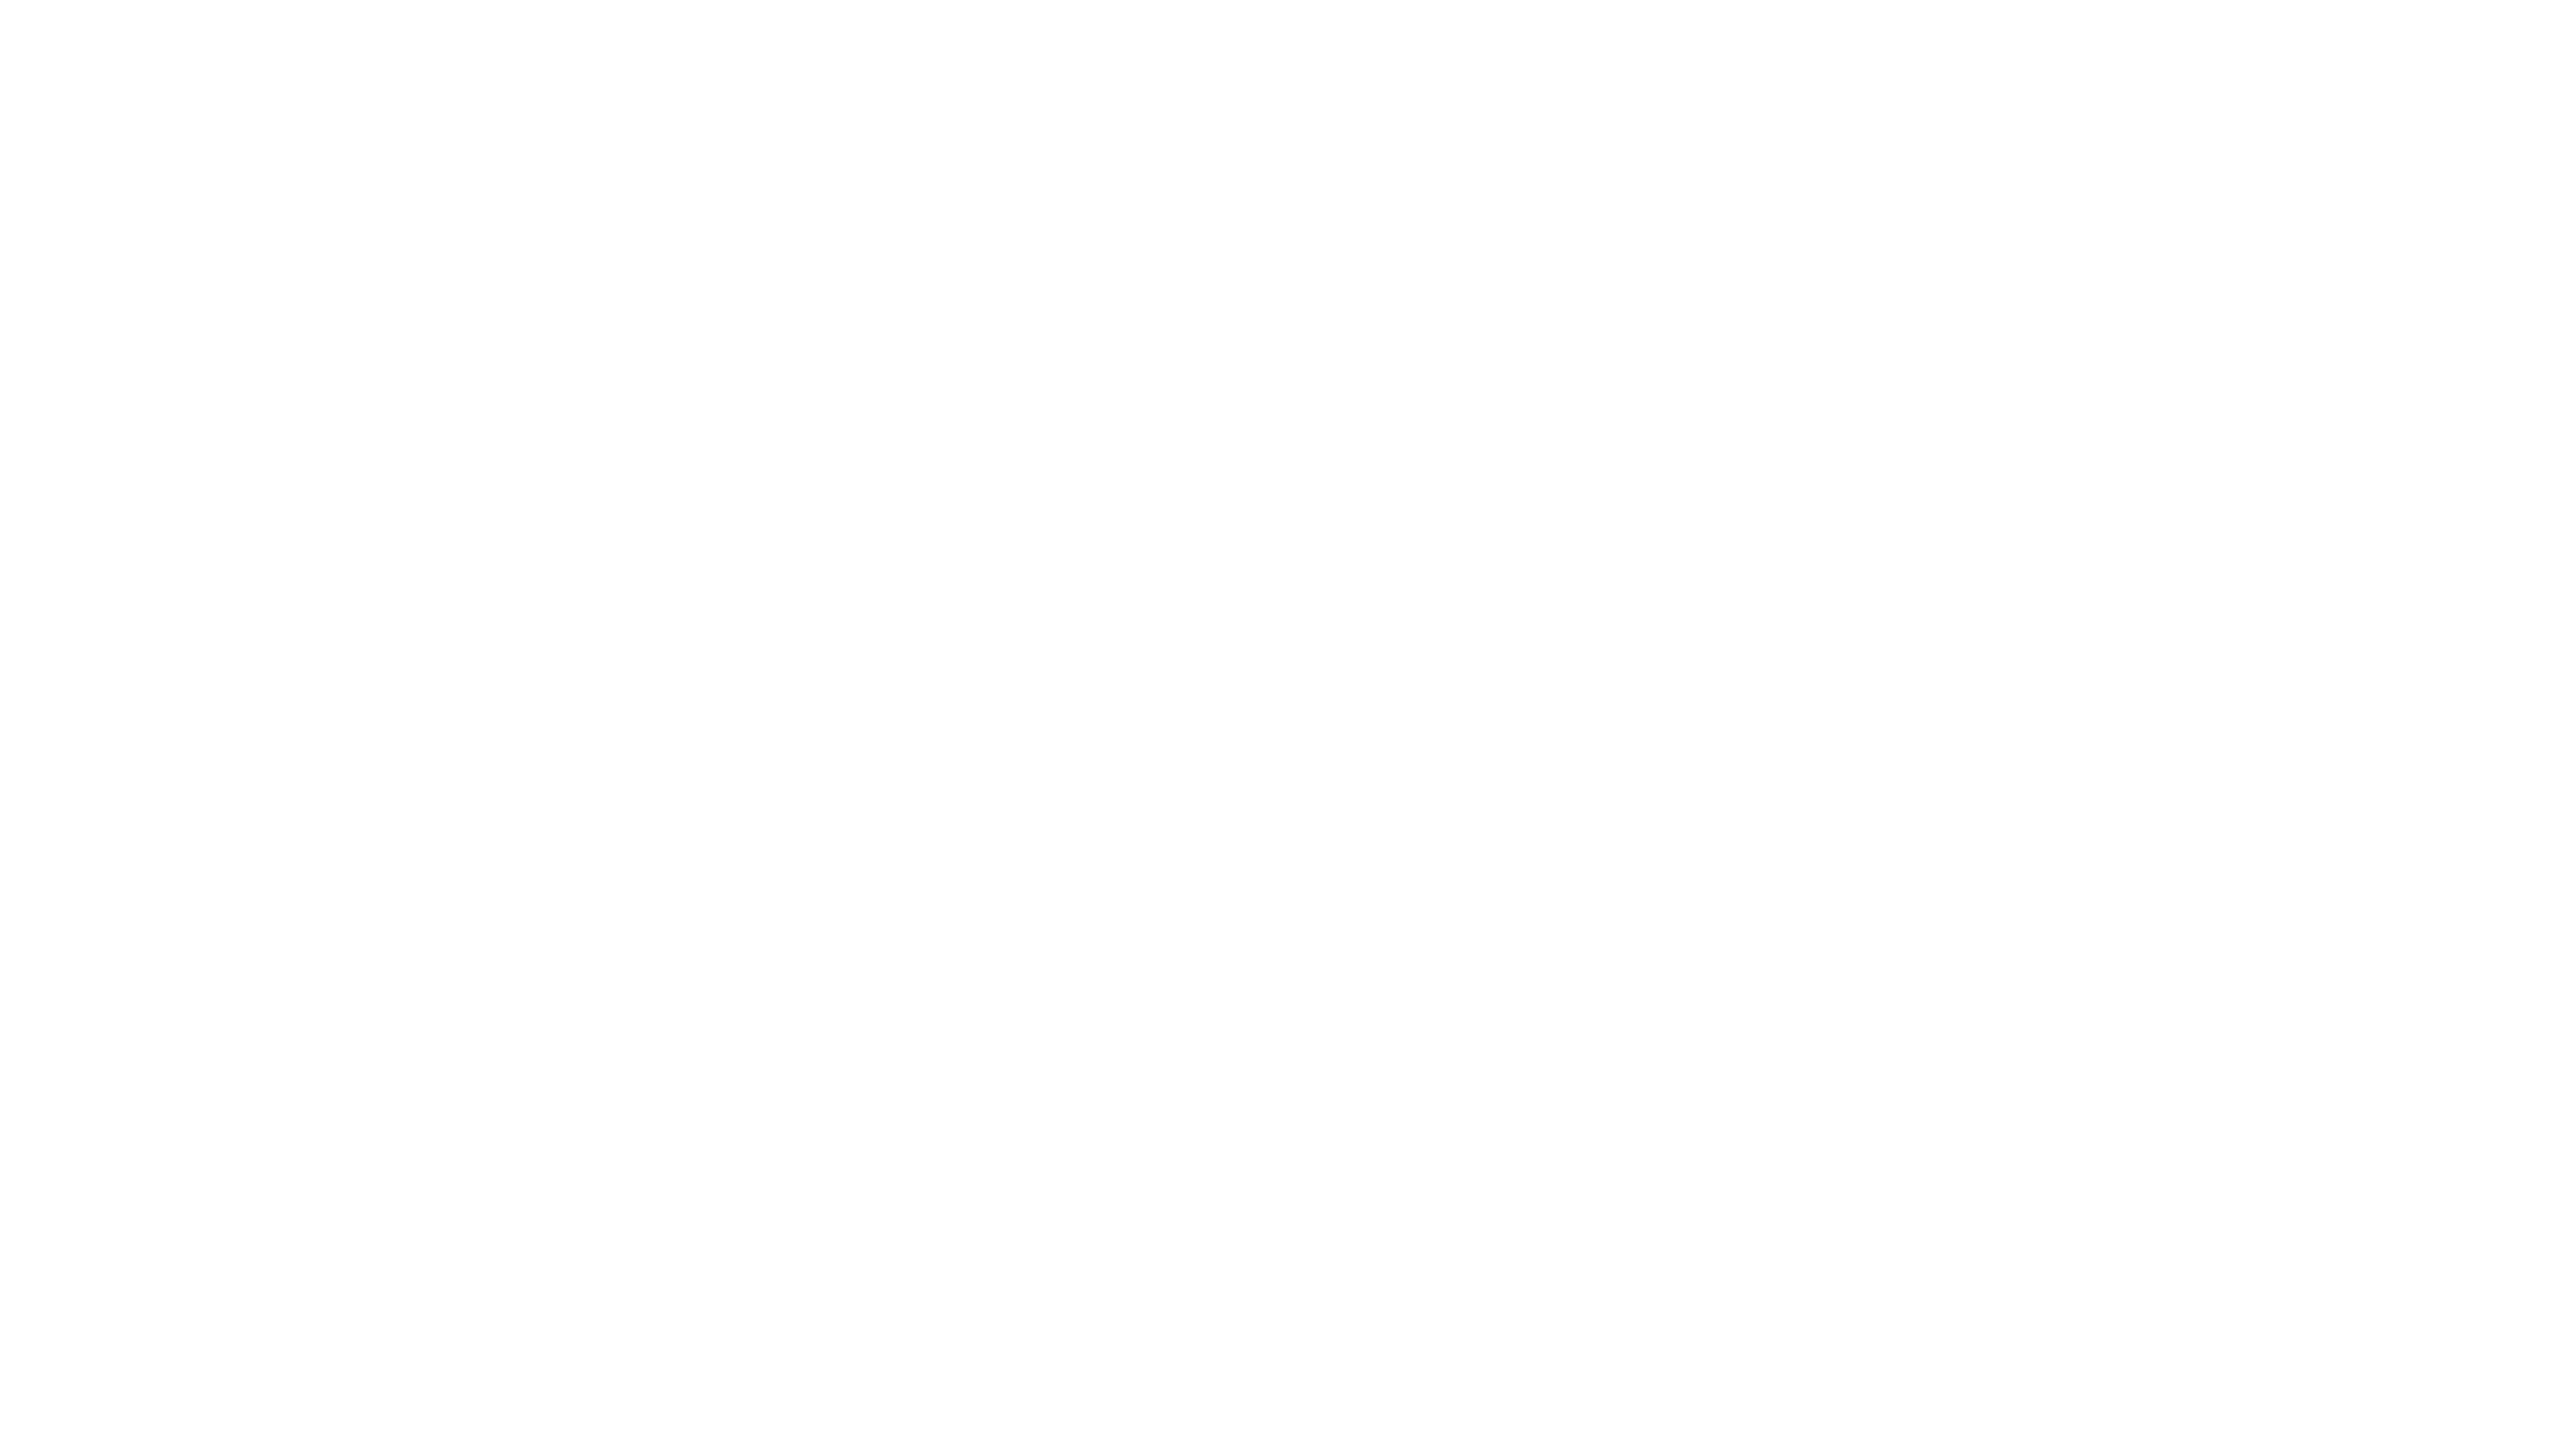 Incka